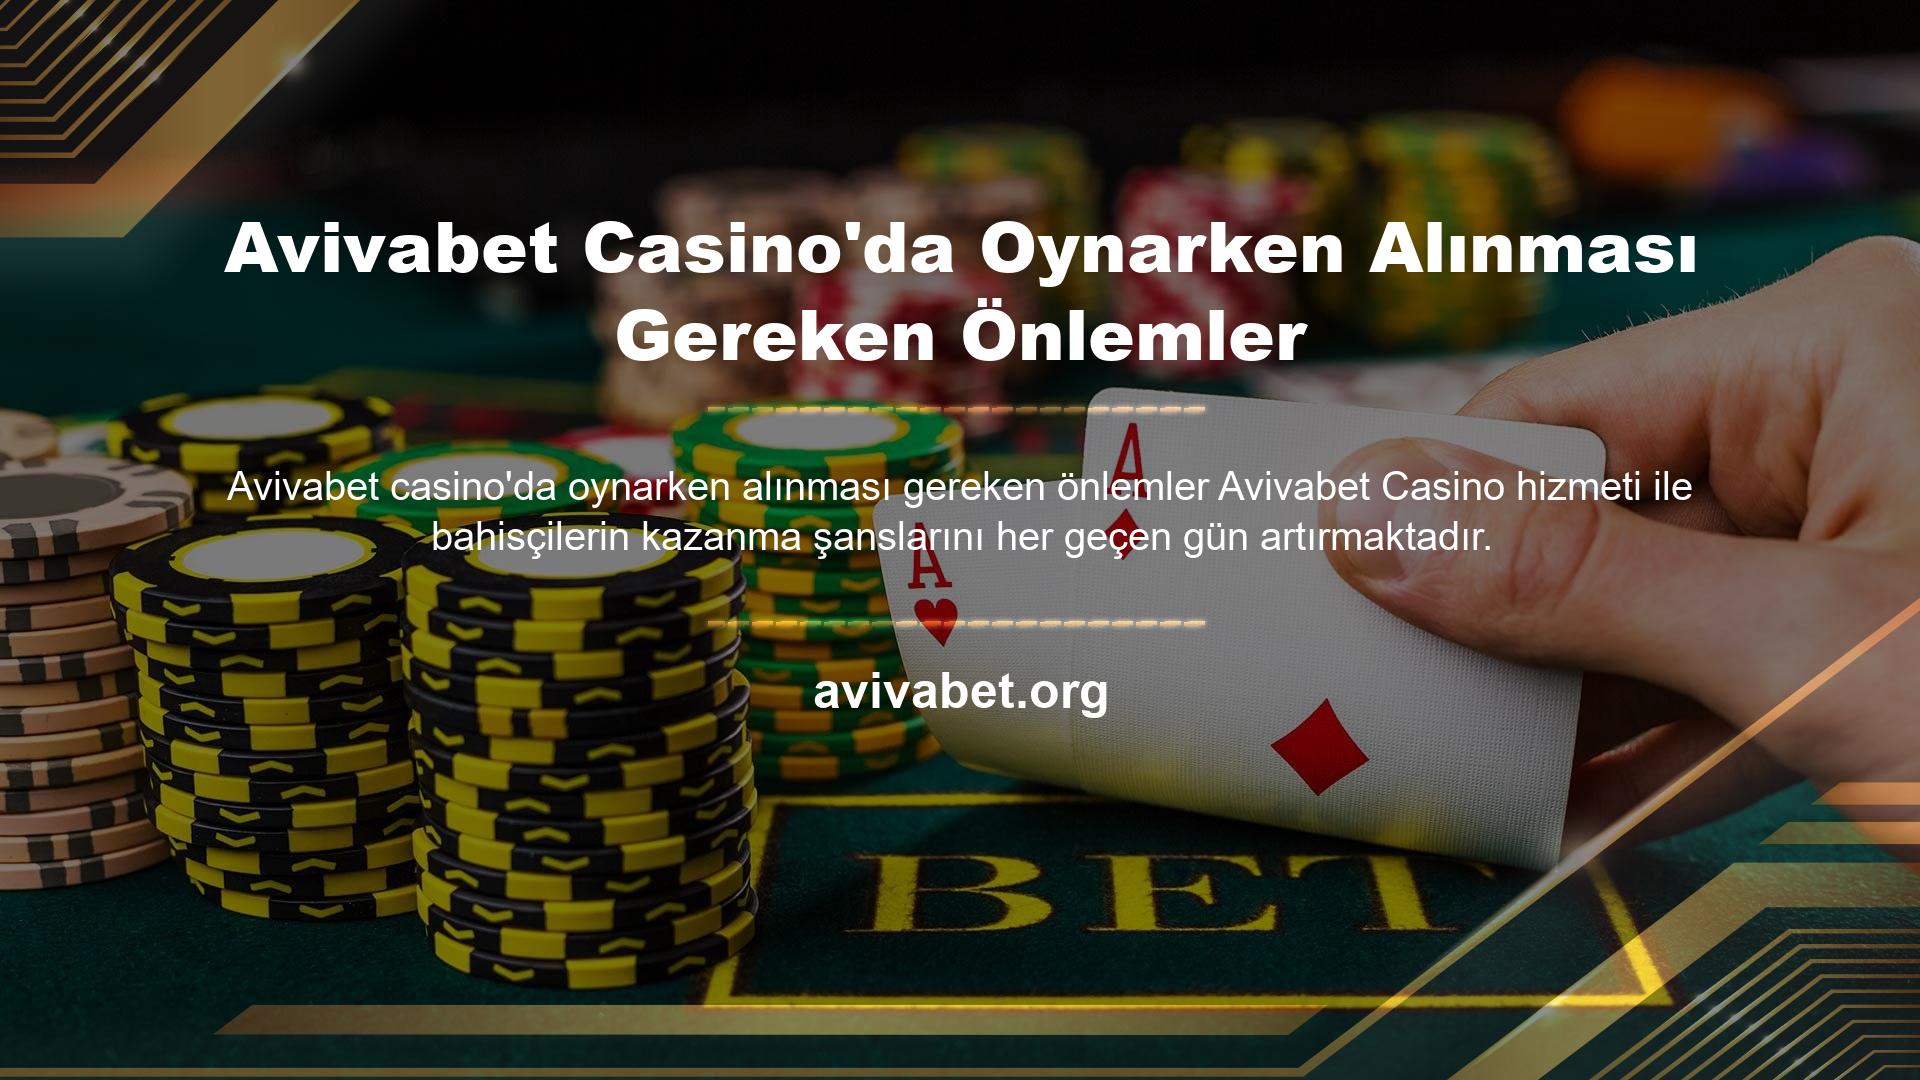 Canlı Bahis Bürosu, ülkemizde casino sektörünün önde gelen şirketlerinden biridir